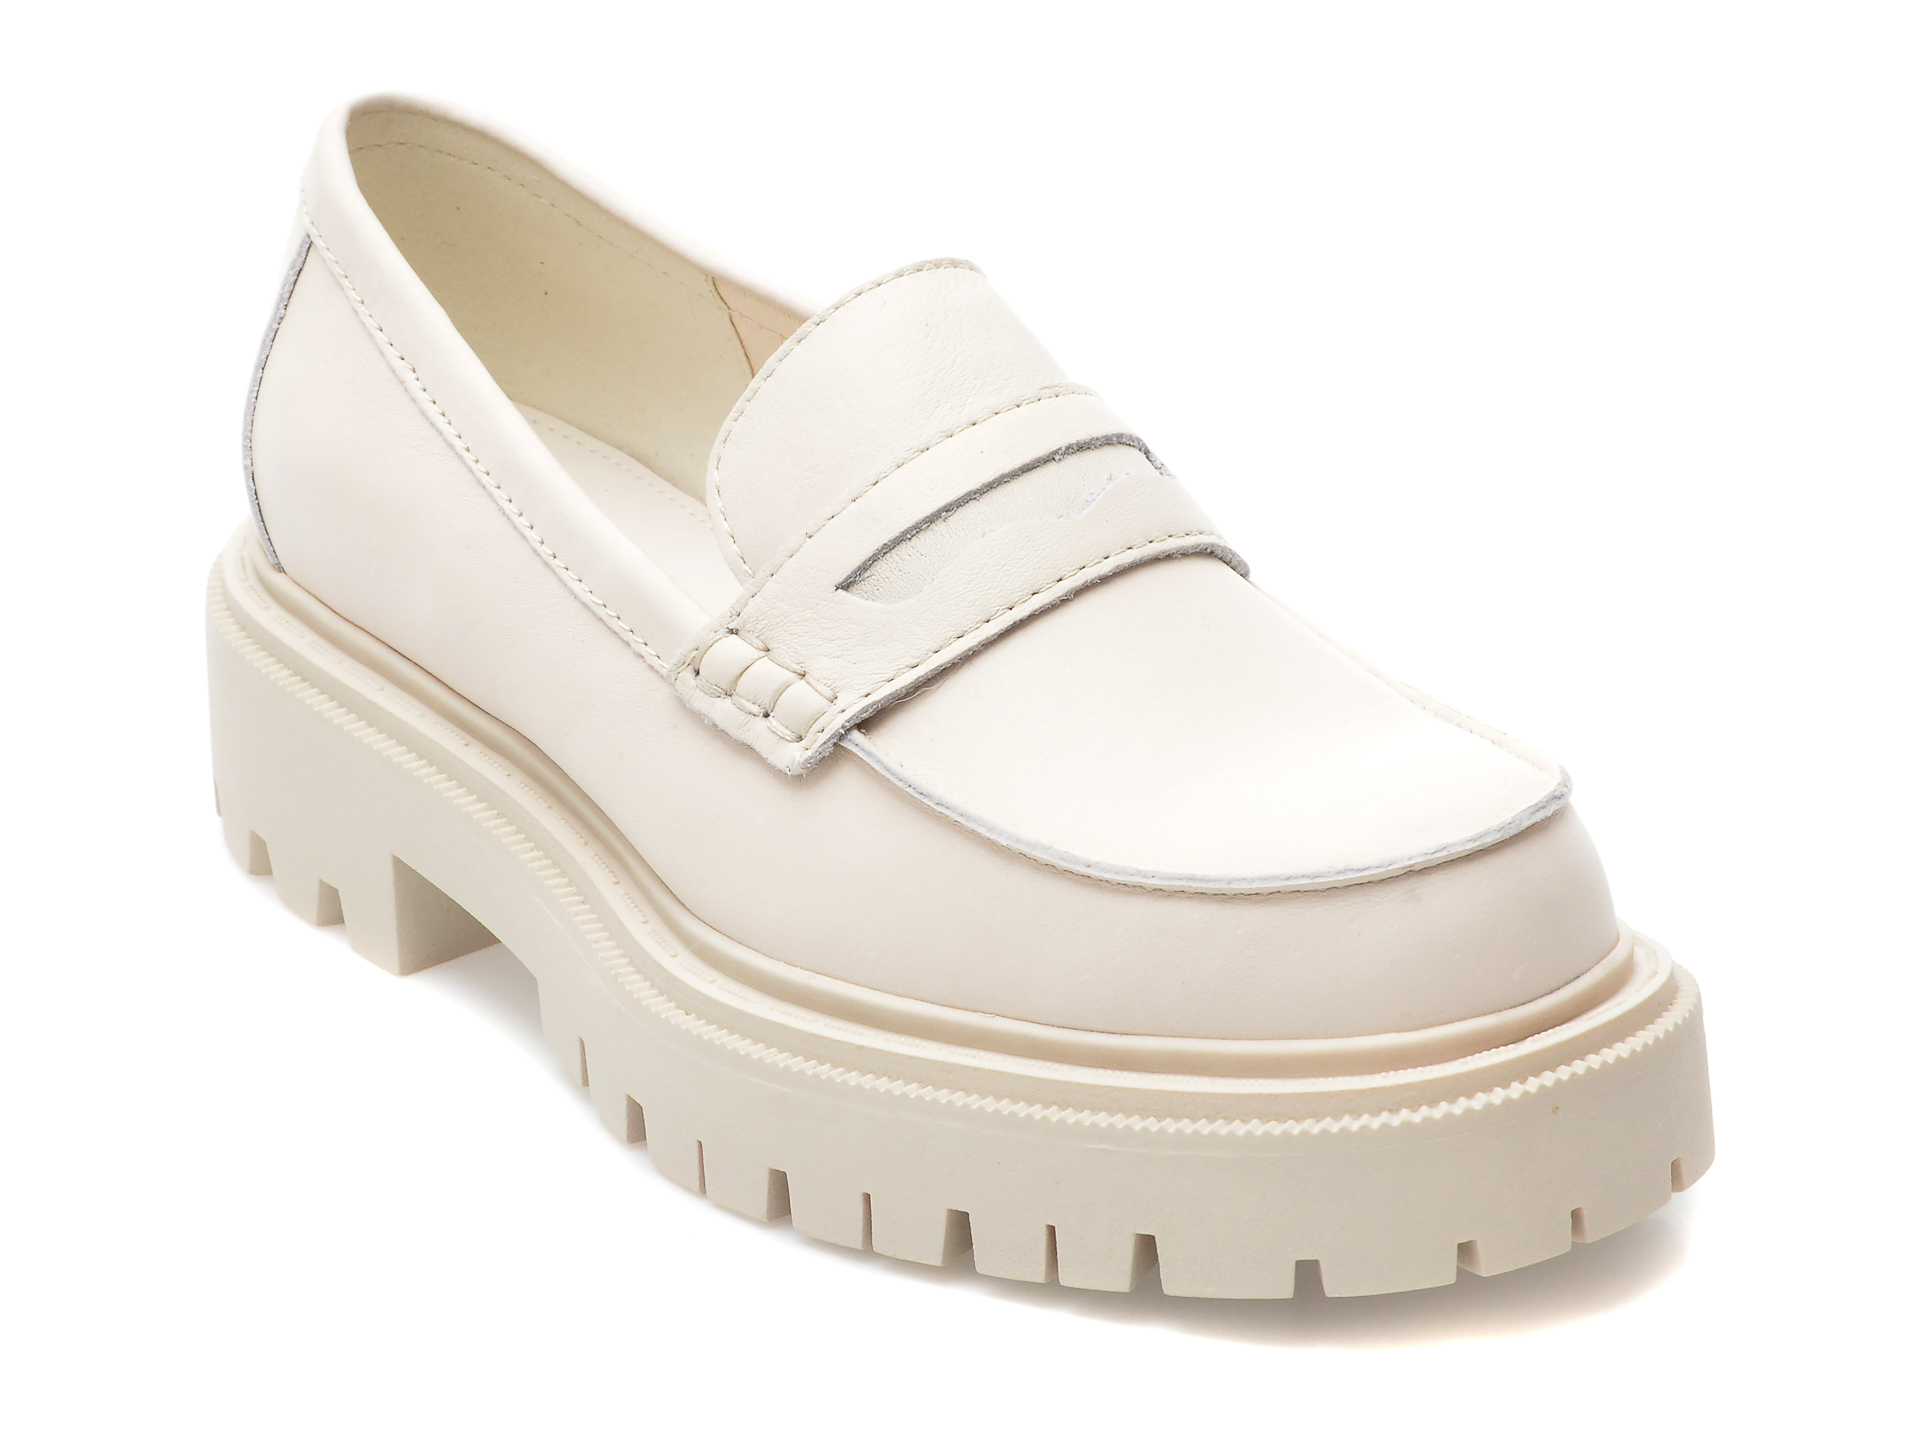 Pantofi ALDO albi, BIGSTRUT110, din piele naturala femei 2023-02-03